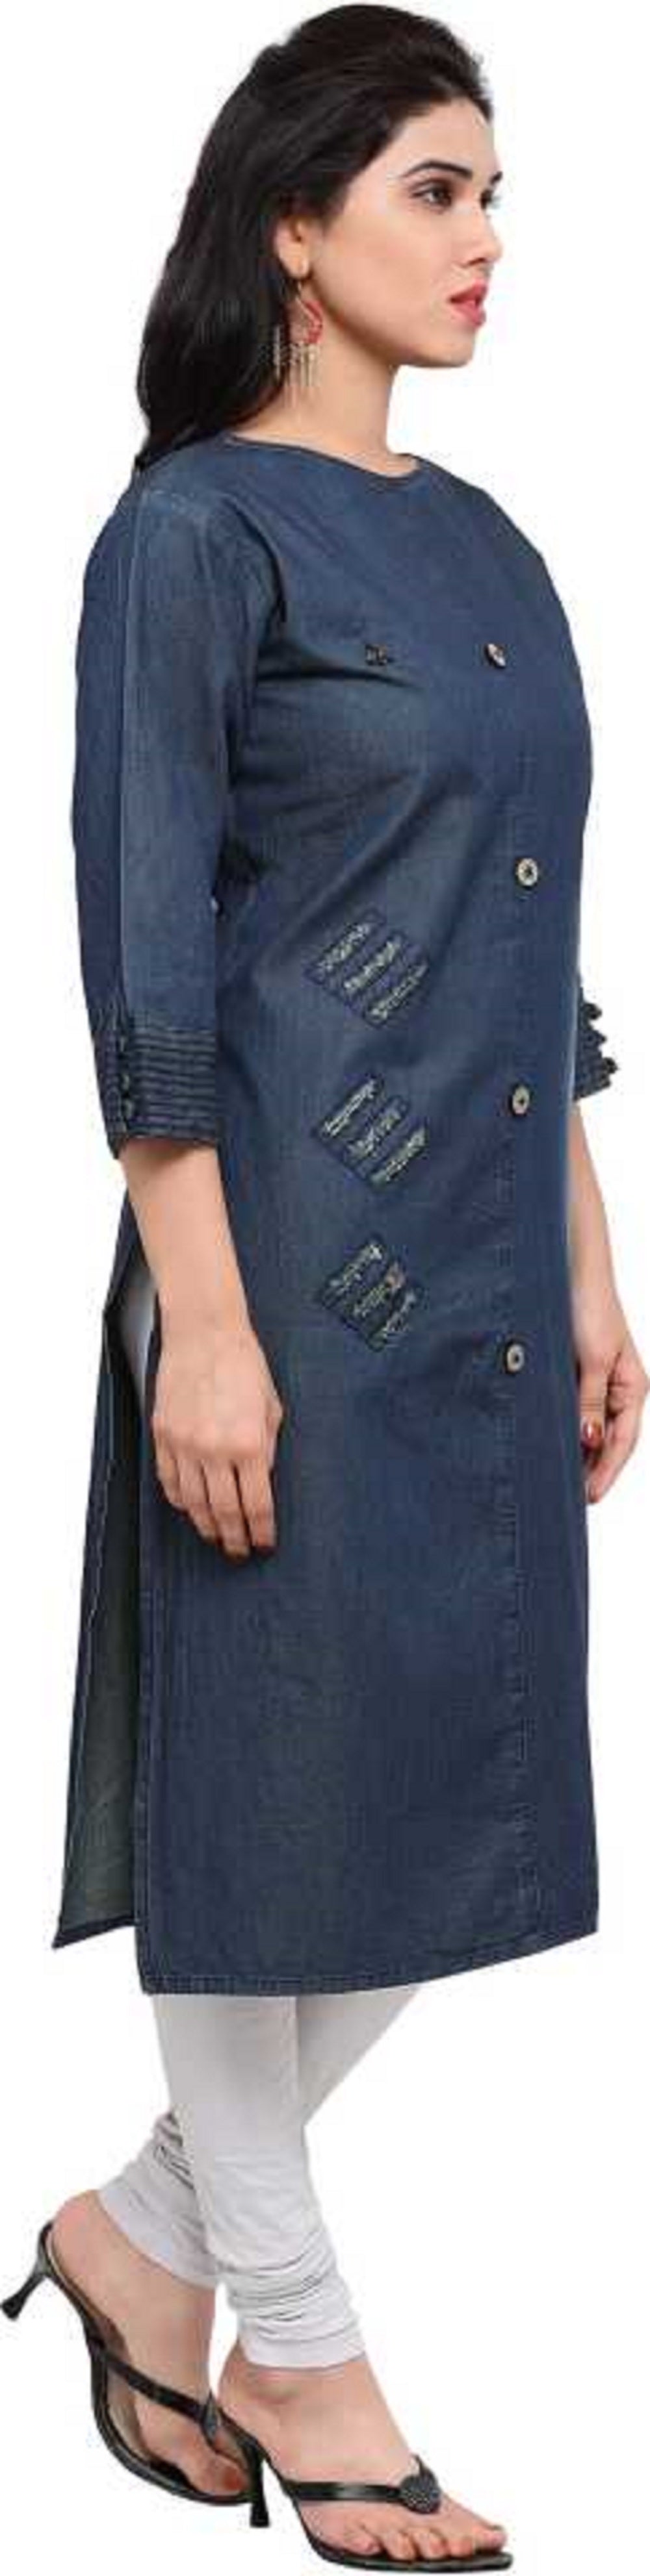 HI-FASHION Embroidered Denim Kurta Casual WEAR for Women Small : Amazon.in:  Fashion